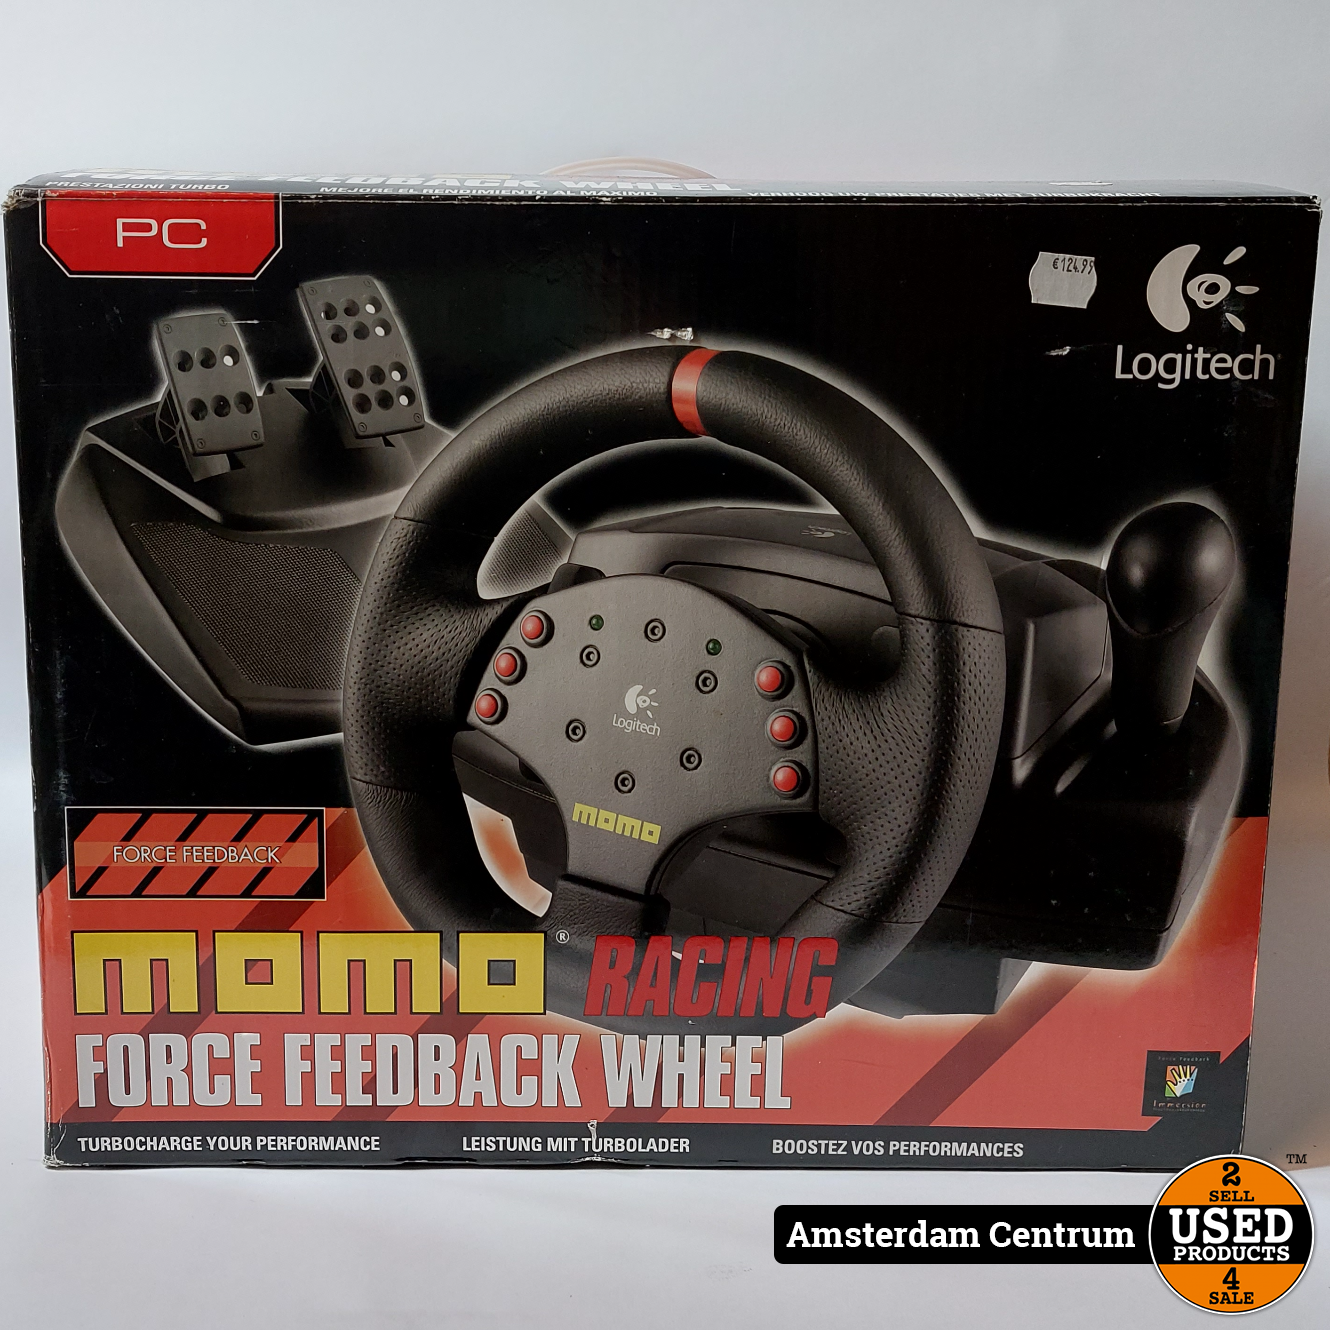 Драйвера для momo racing. Logitech Momo Racing Force feedback Wheel. Logitech Momo Racing руль желтый. Регулировка Momo Racing. Драйвера на руль МОМО логитеч.